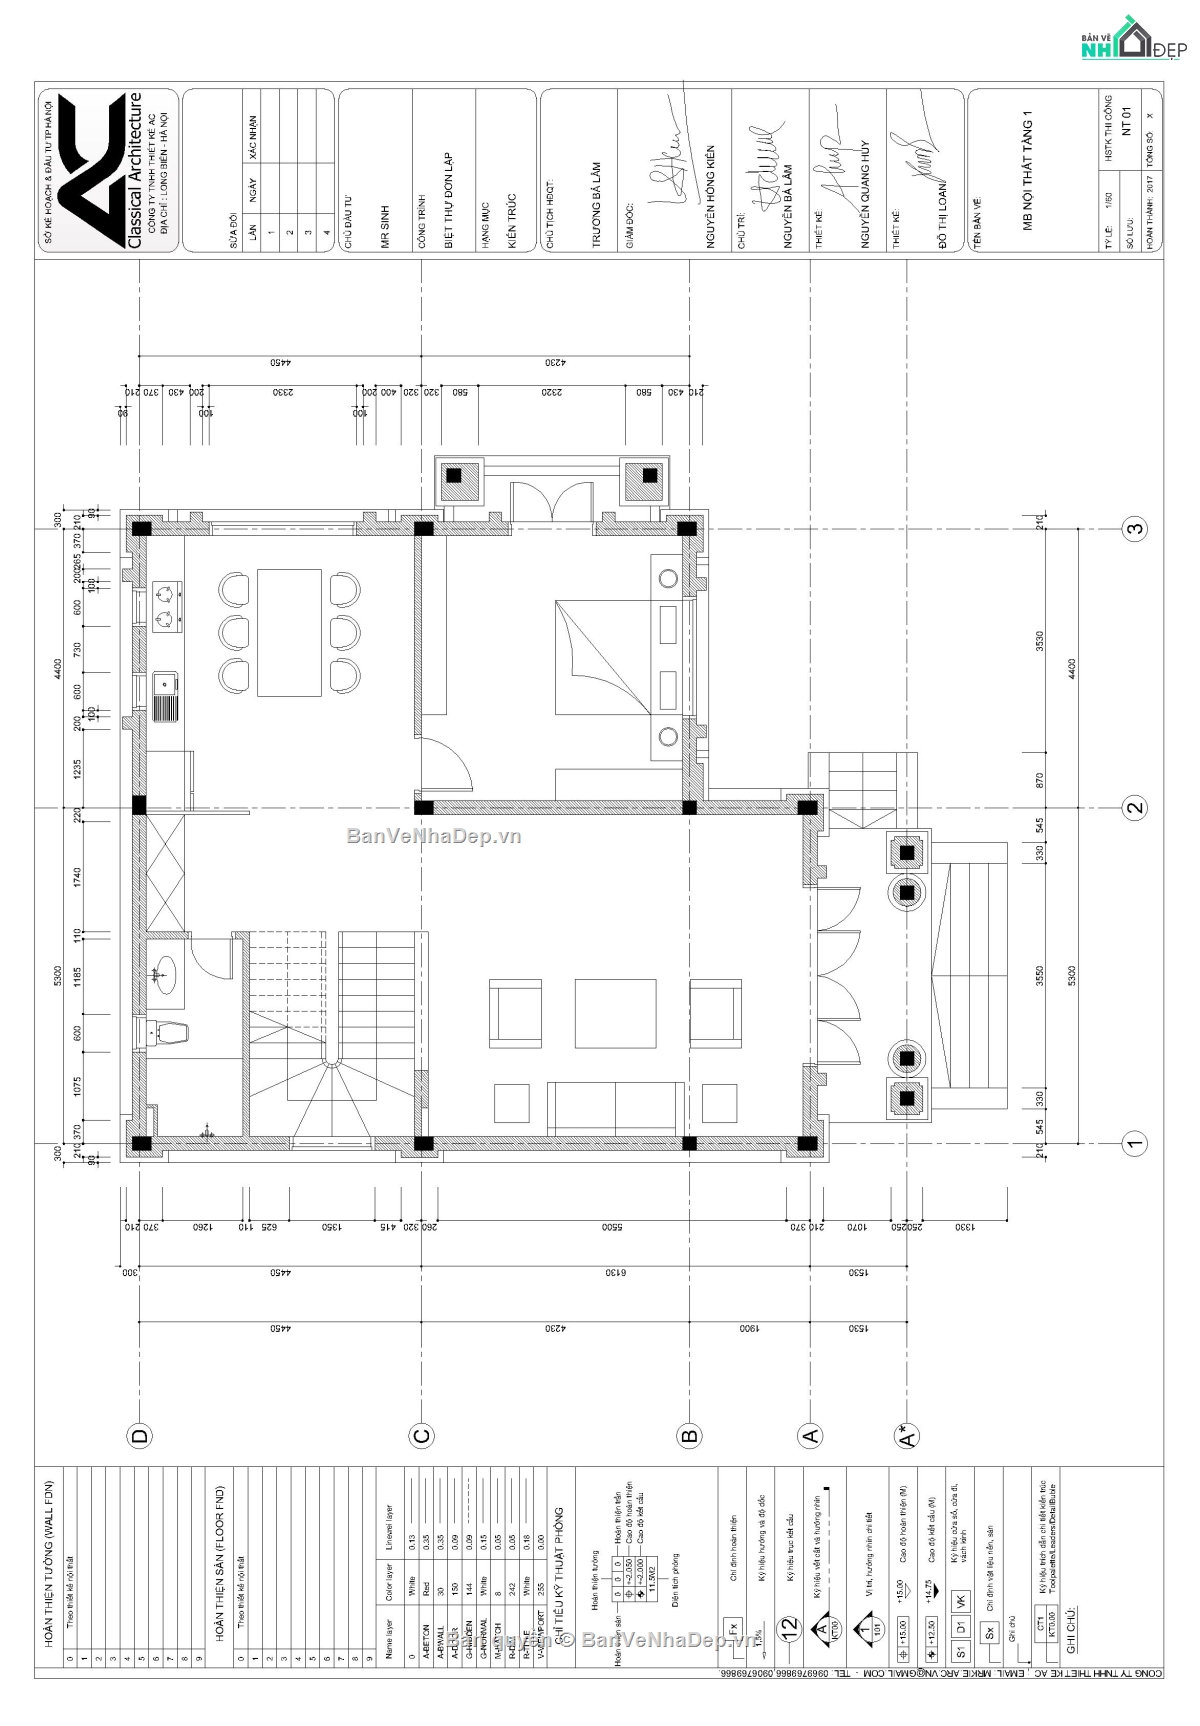 7 bộ bản vẽ AUTOCAD hồ sơ biệt thự 3 tầng hiện đại full kiến trúc, kết cấu, me và phối cảnh